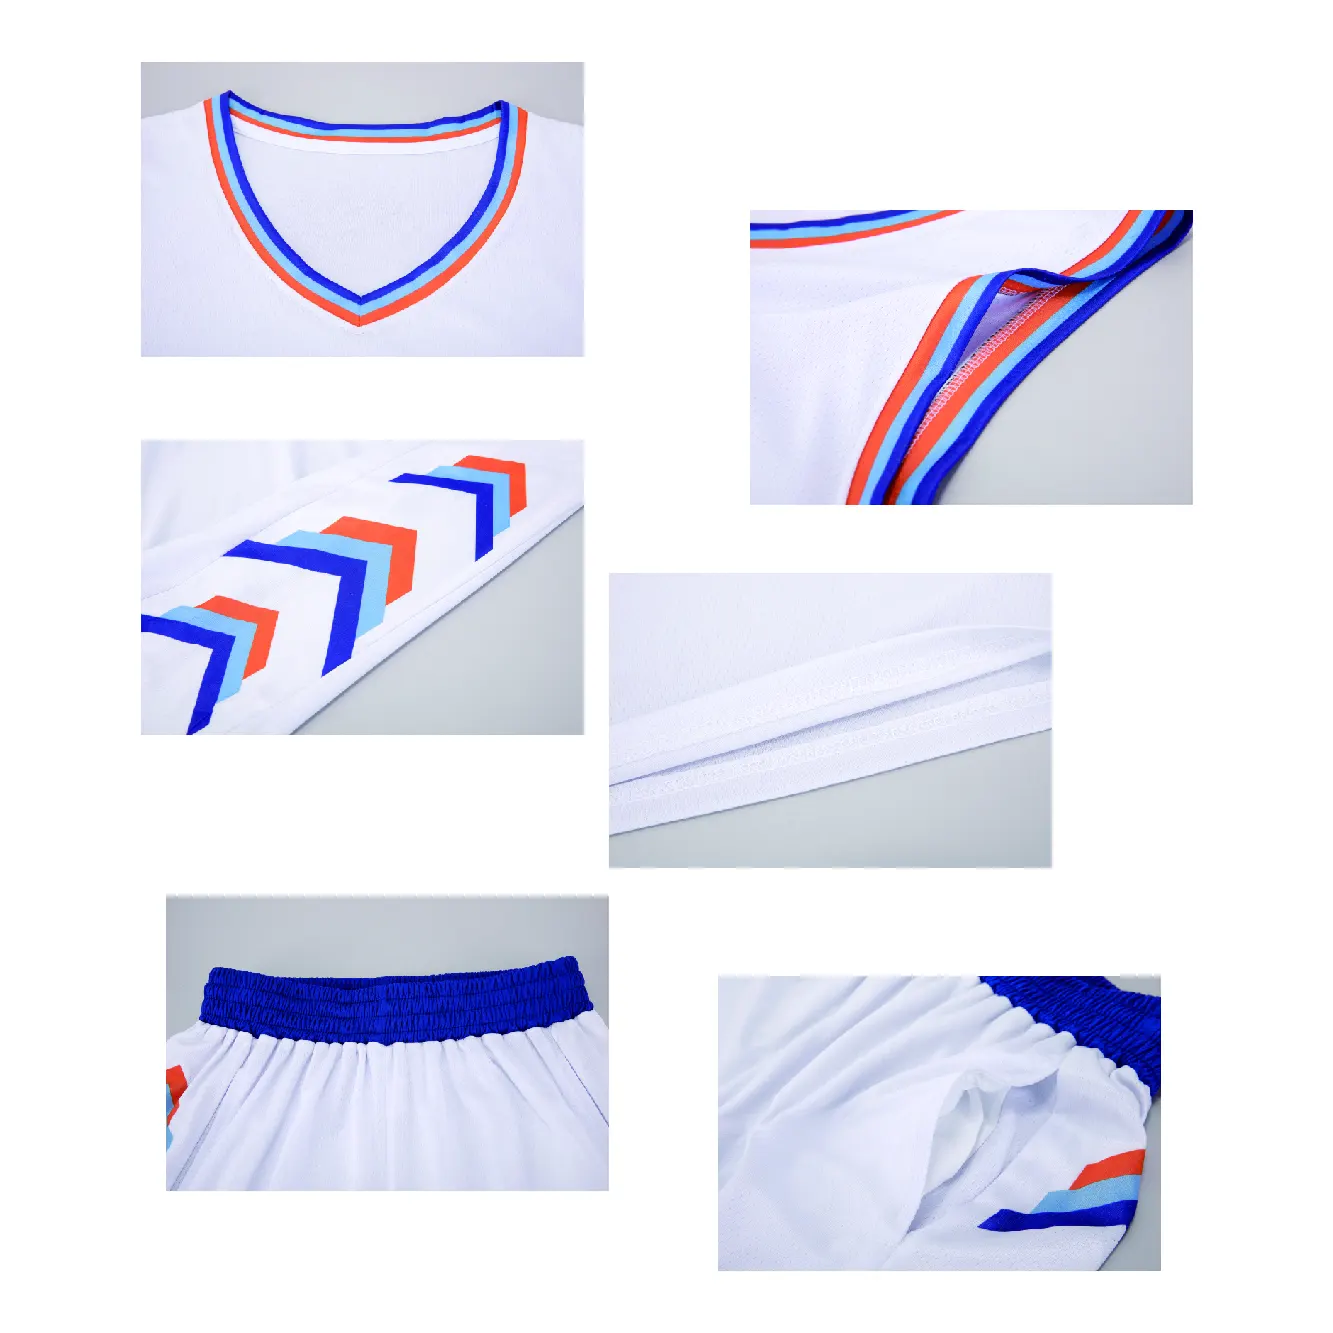 O mais recente conjunto de uniforme de basquete com design de sublimação personalizado, a melhor camisa de basquete masculina por atacado